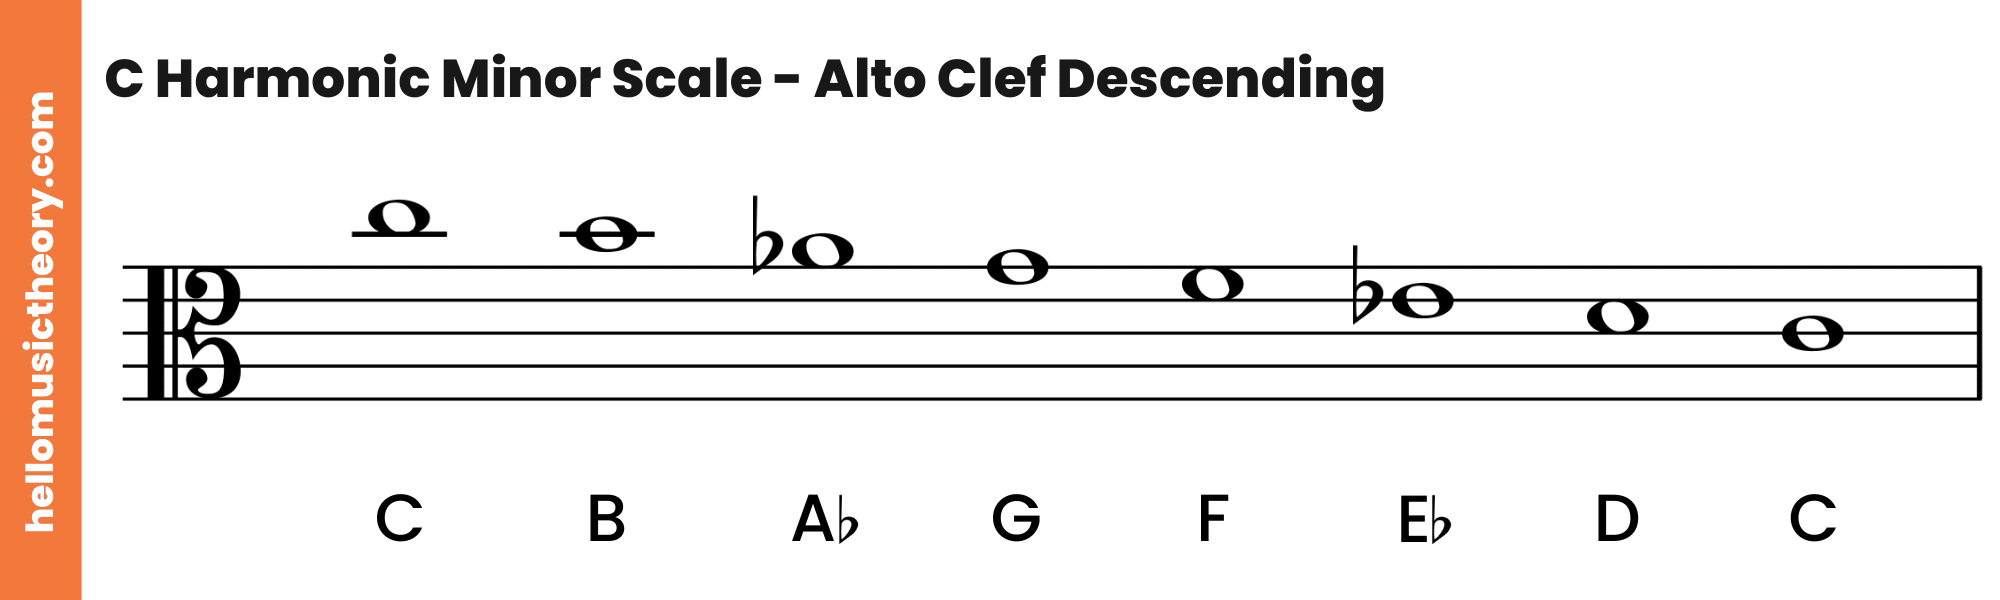 C Harmonic Minor Scale Alto Clef Descending